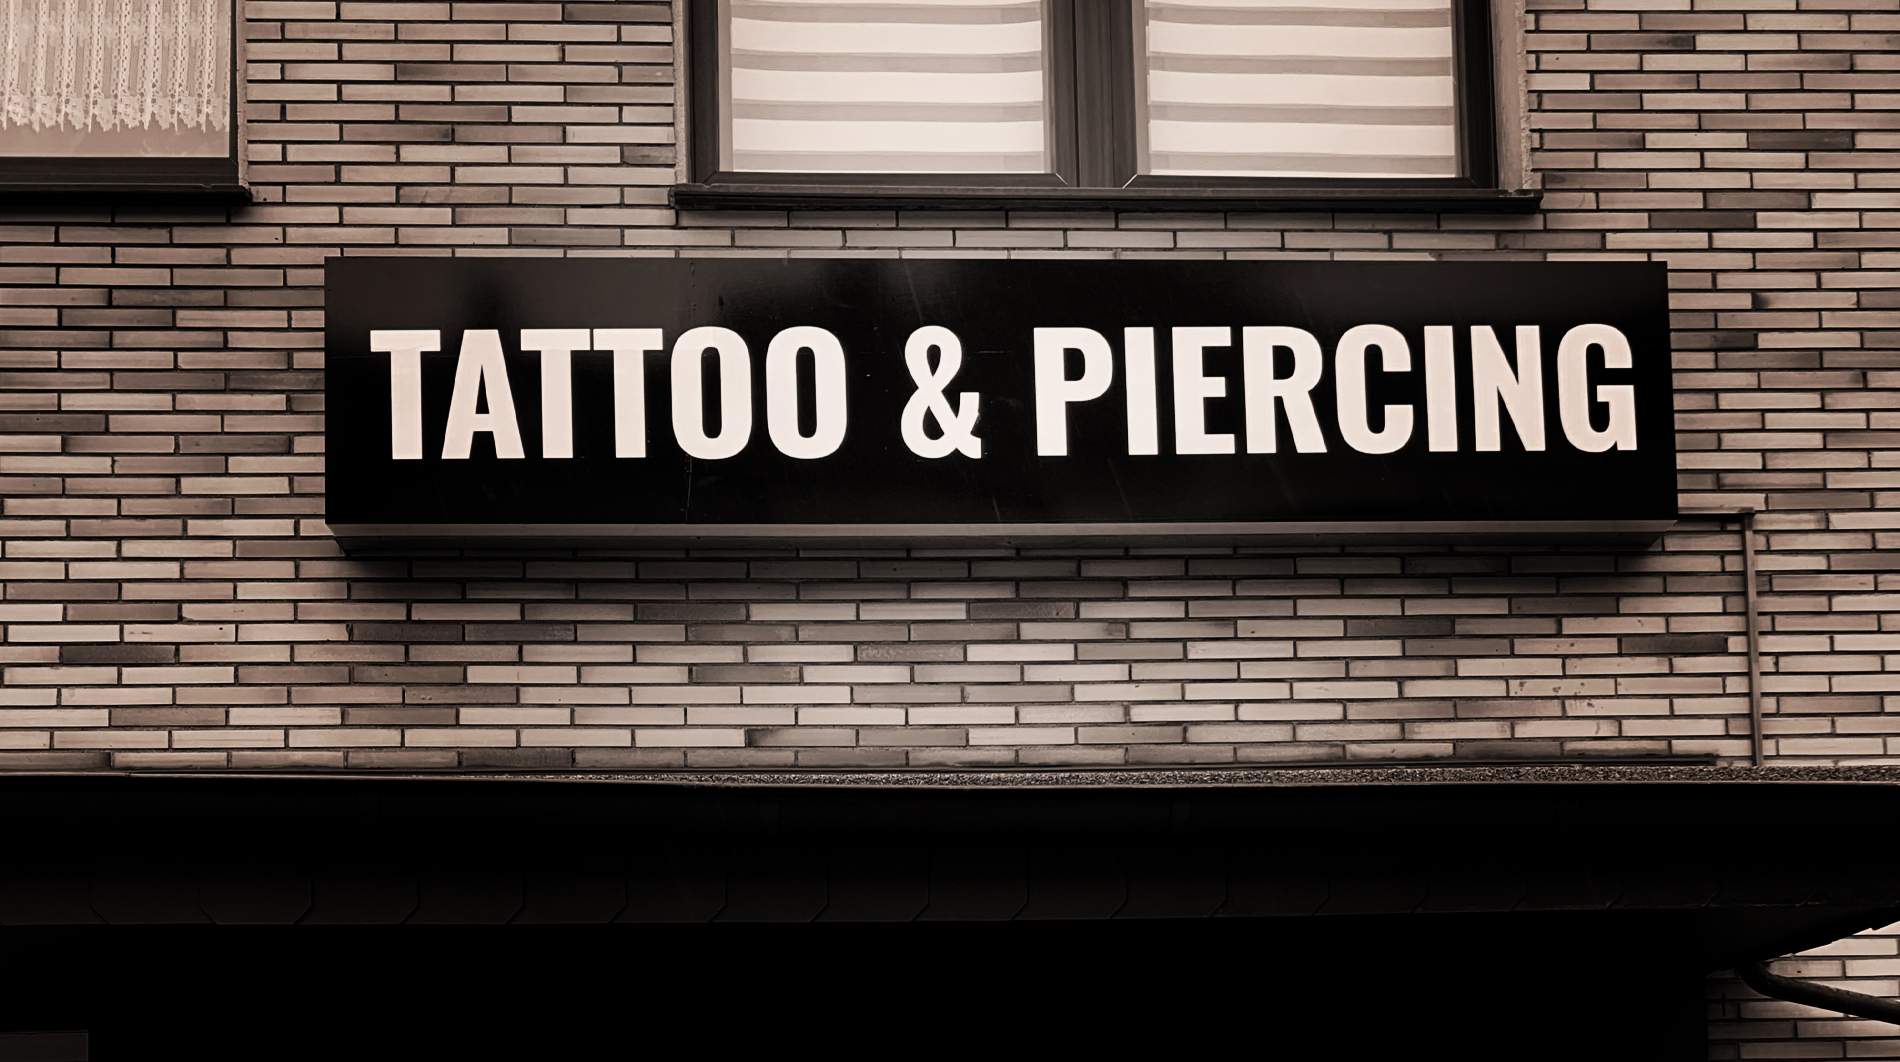 Trust Me Tattoo & Piercing Leuchtkasten Werbung